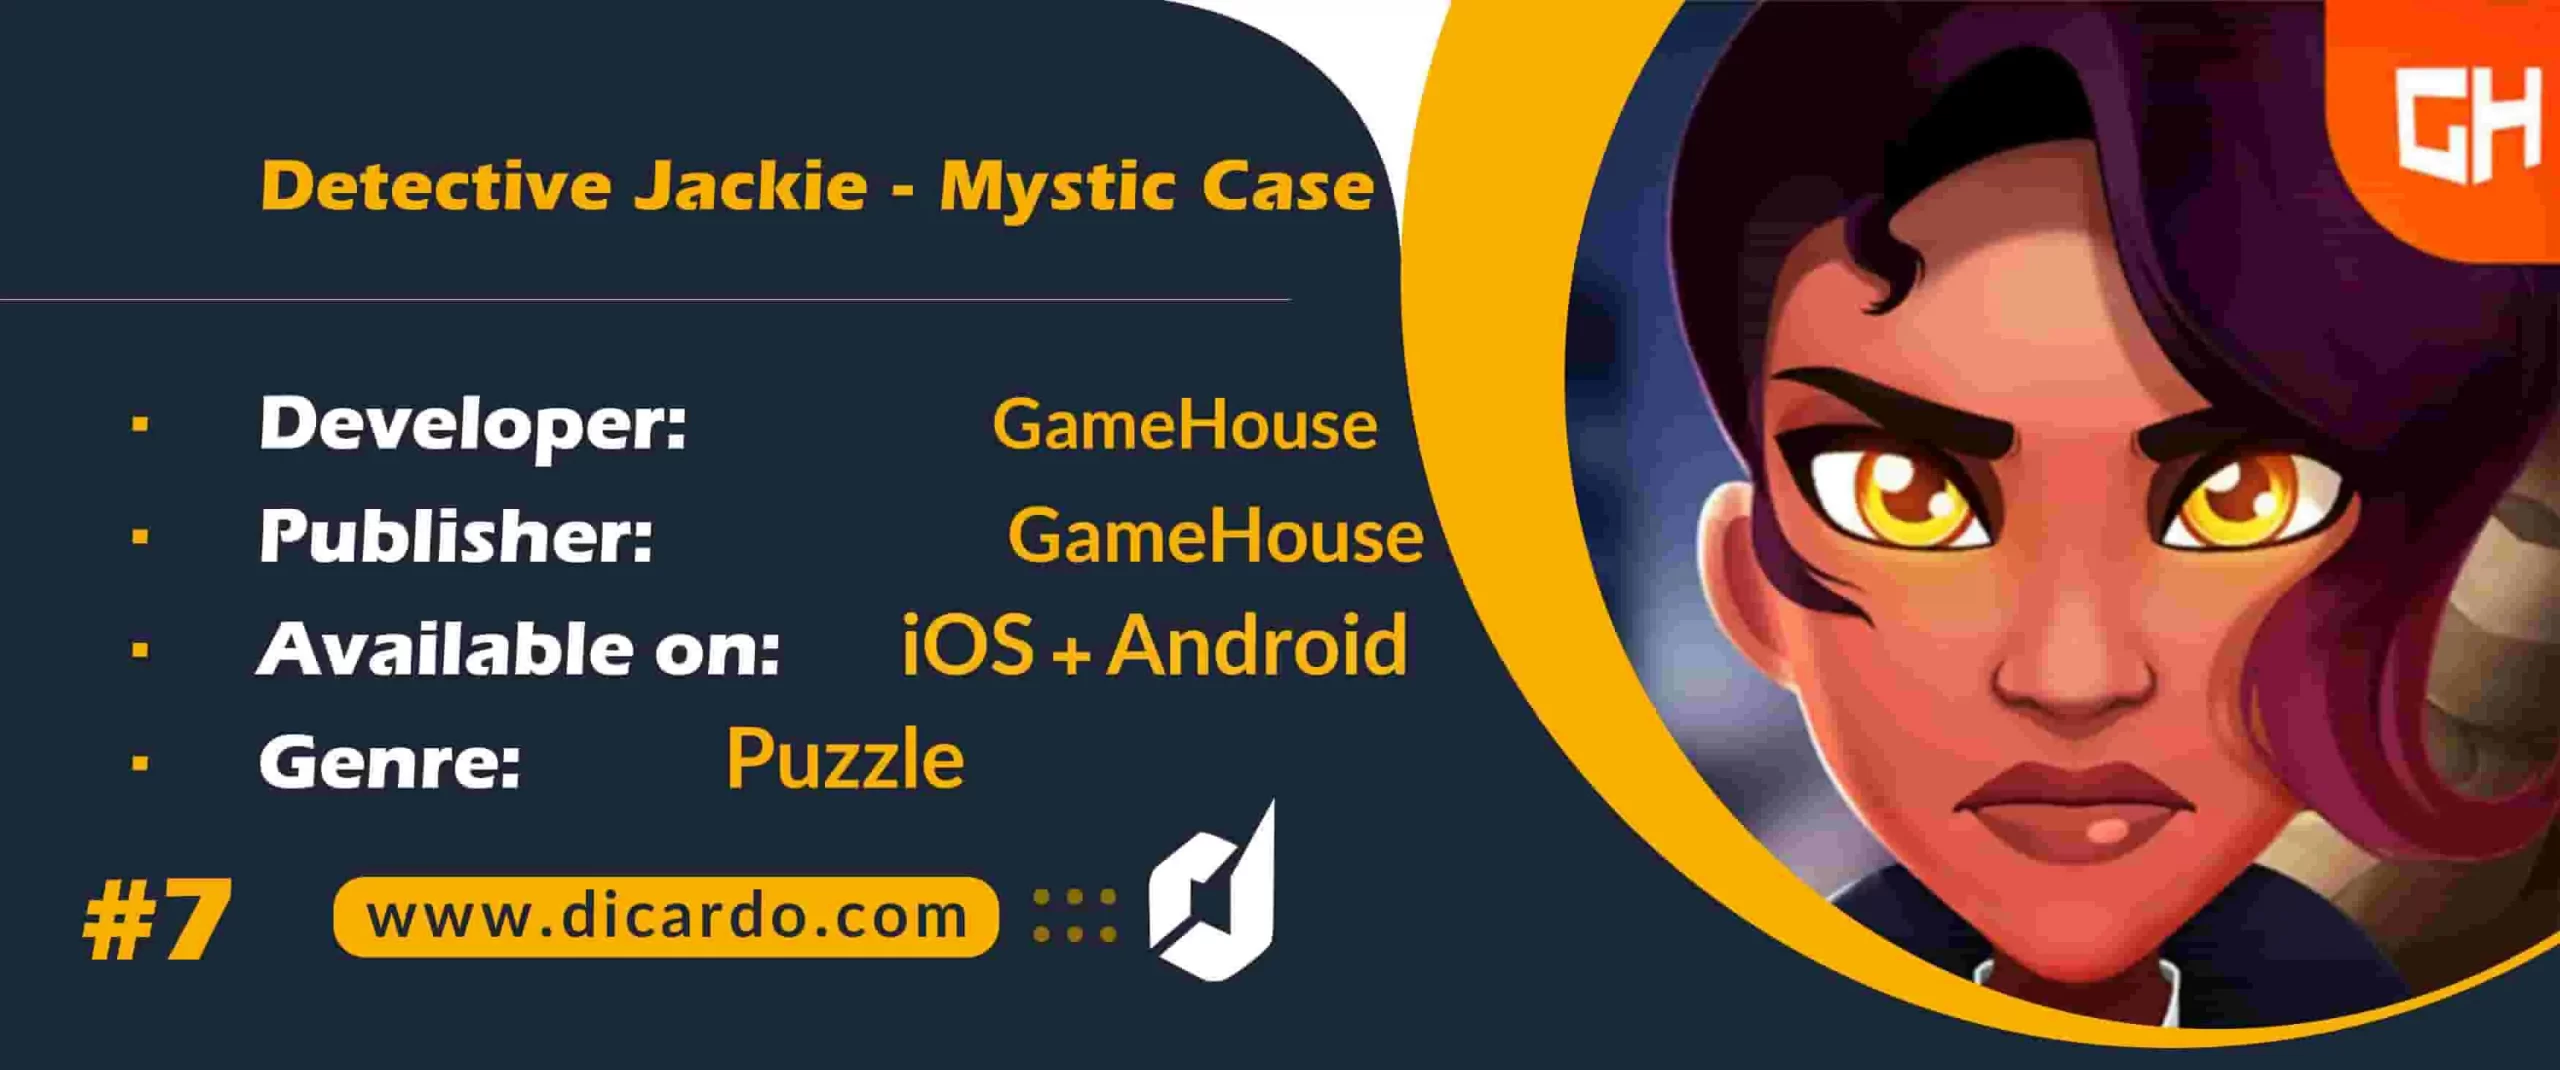 #7 دیتکتیو جکی میستیک کیس Detective Jackie – Mystic Case